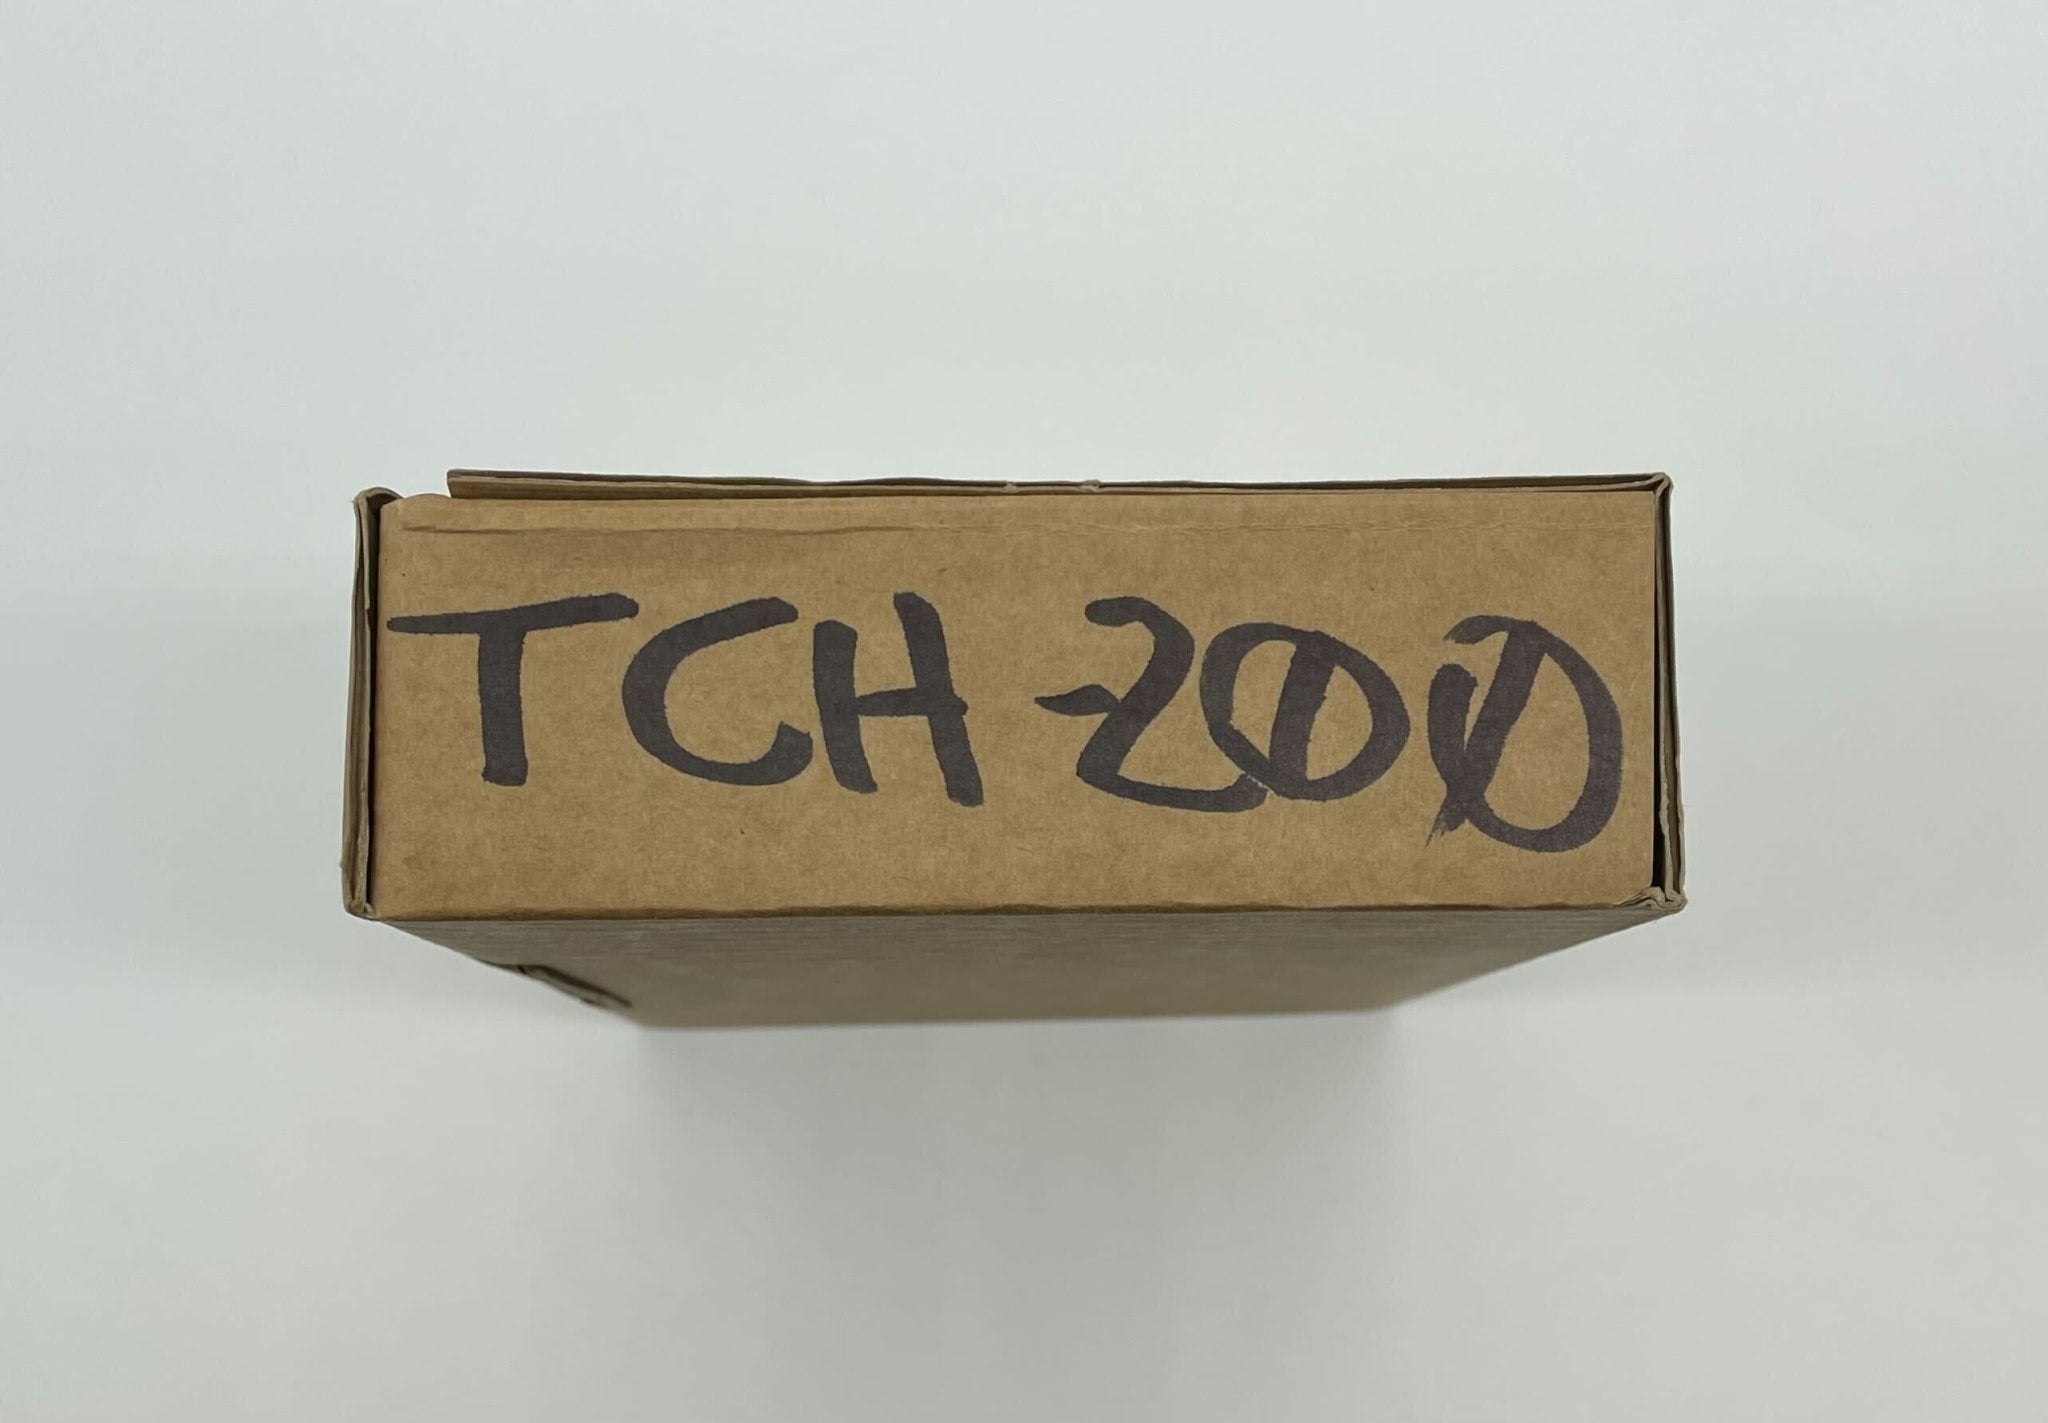 Hochiki TCH-200 - The Fire Alarm Supplier